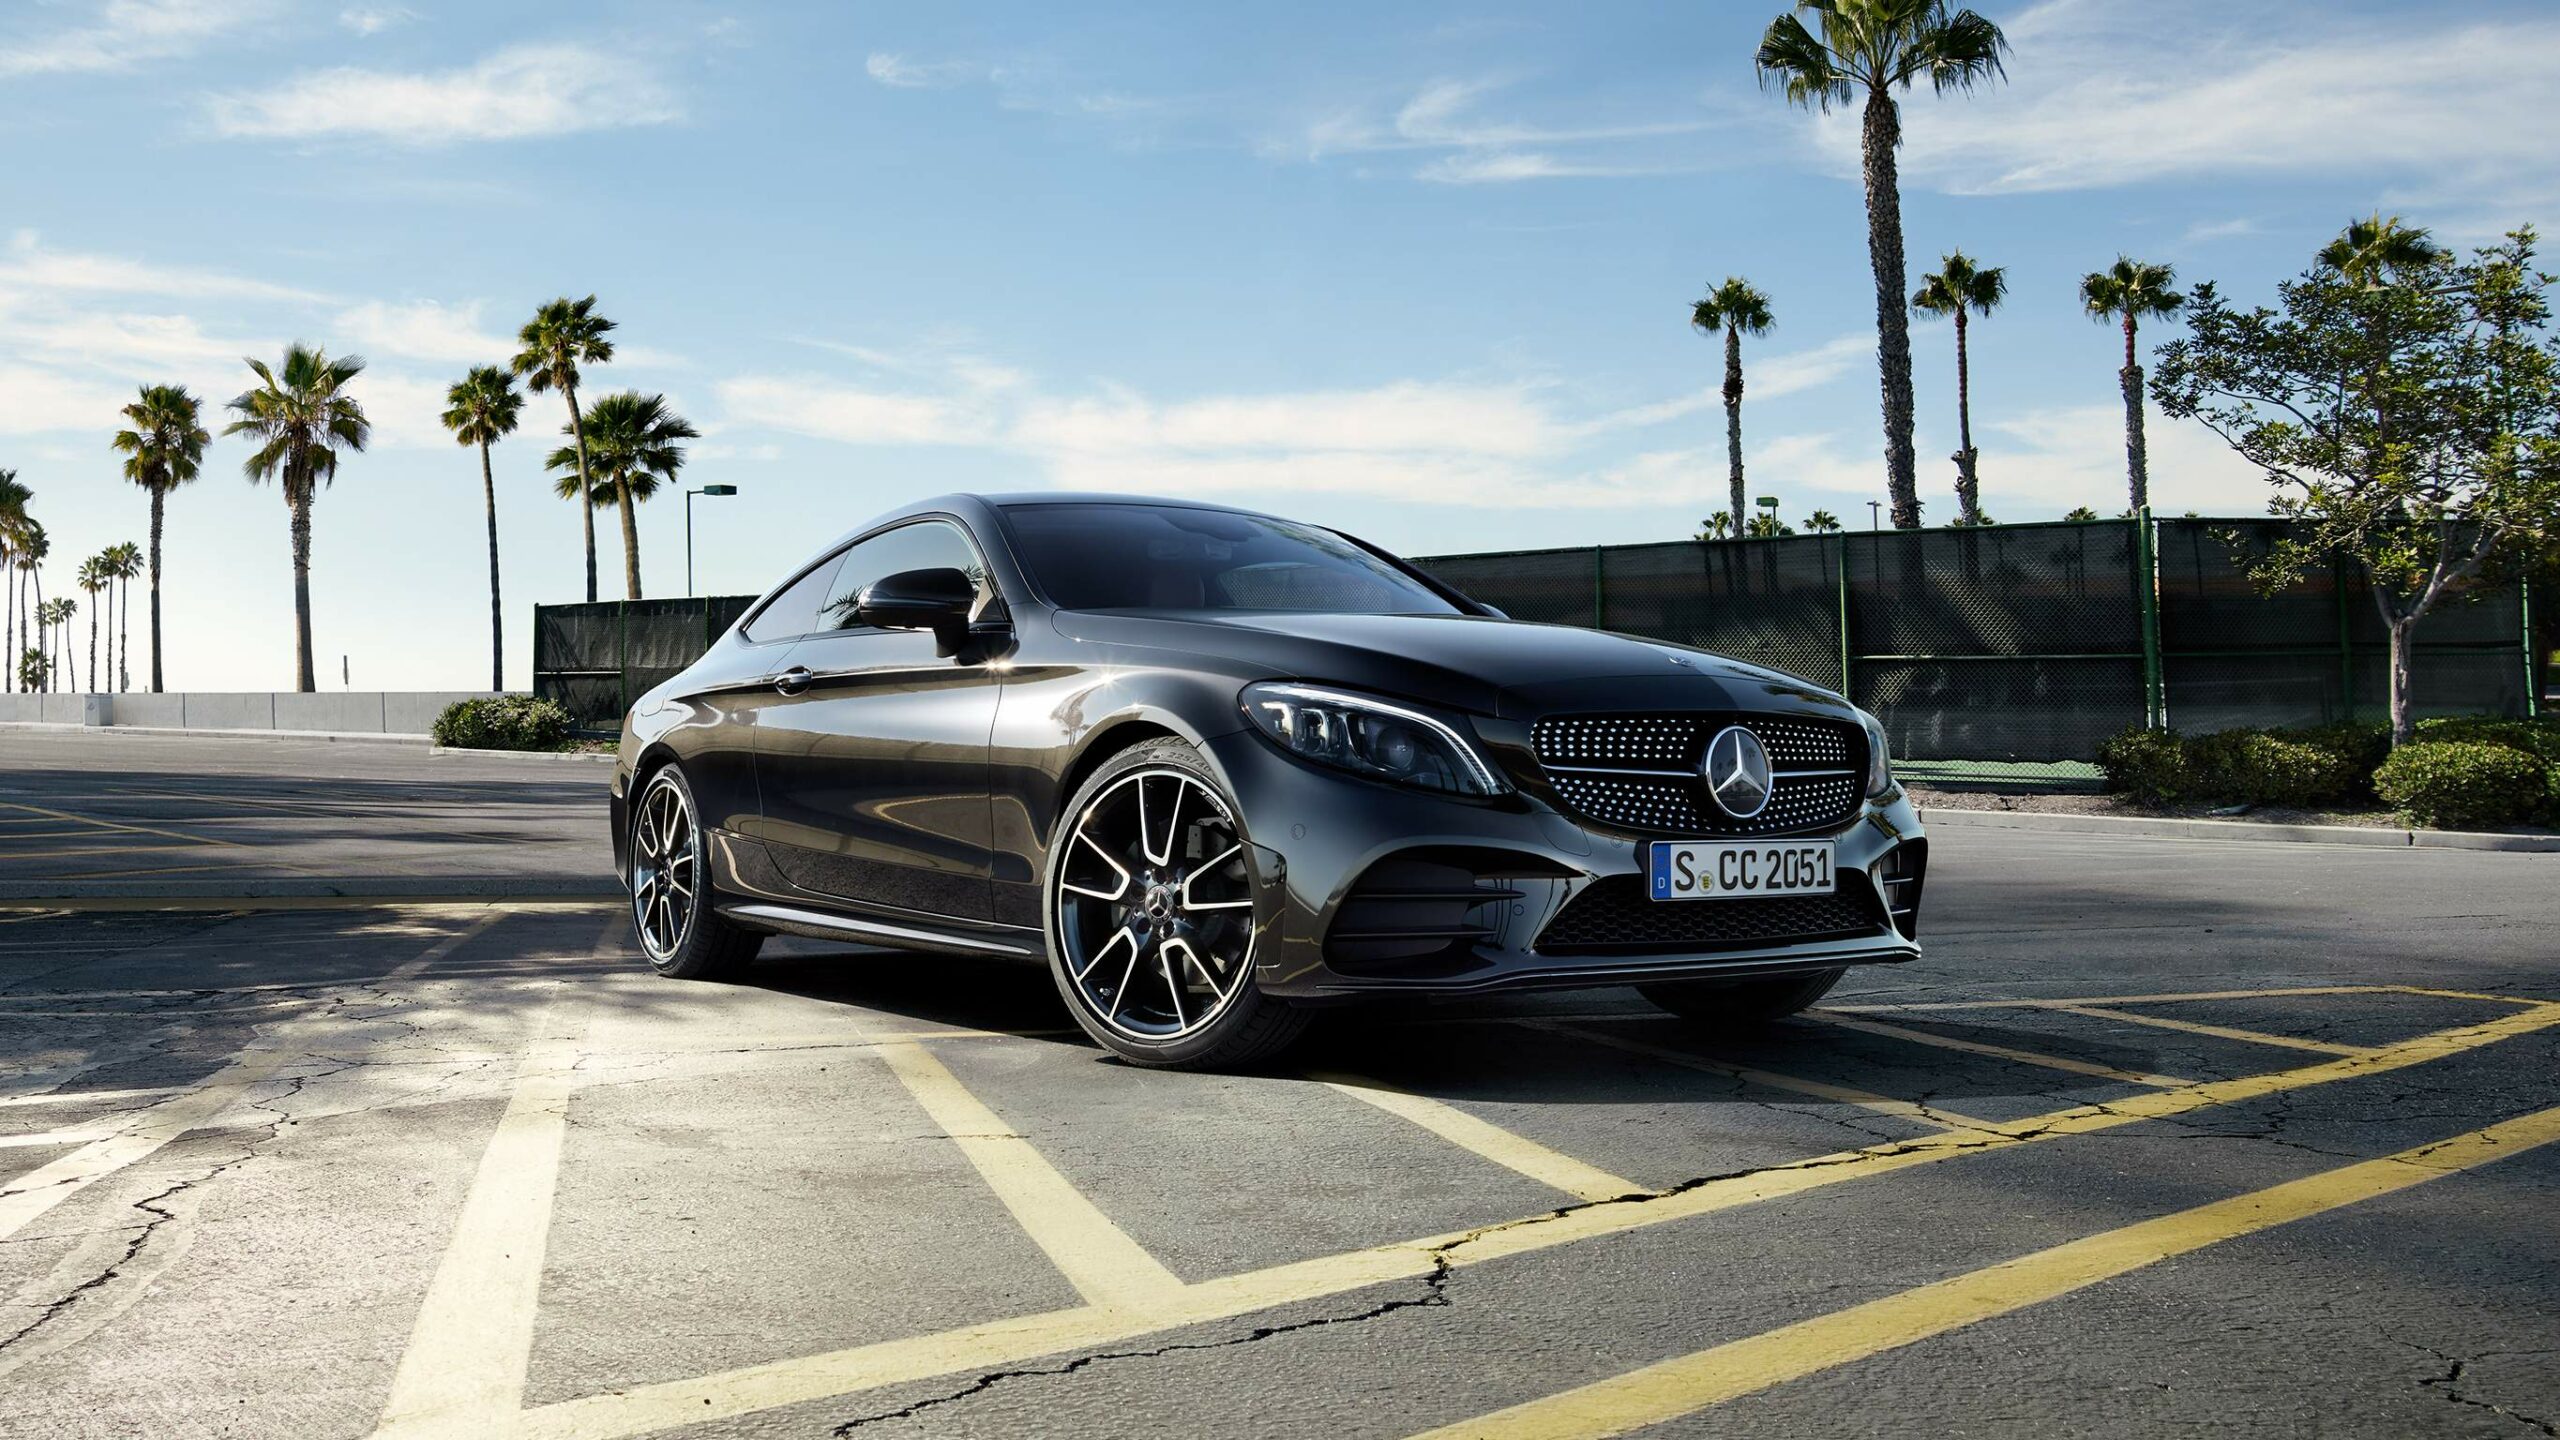 Wallpaper de la lujosa y renombrada Clase C Coupe de Mercedes-Benz en color negro